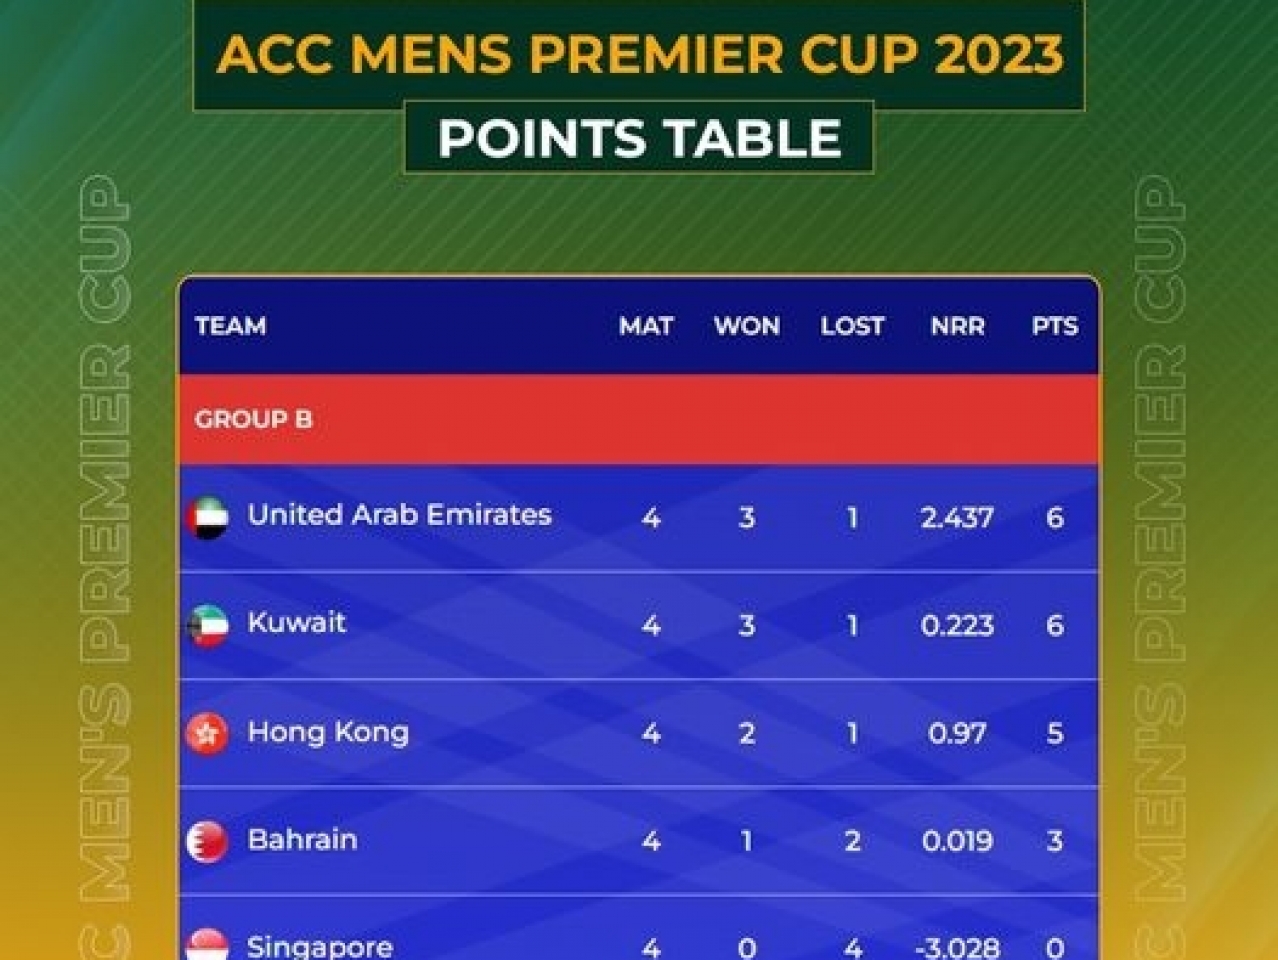 acc mens premier cup 2023 points table